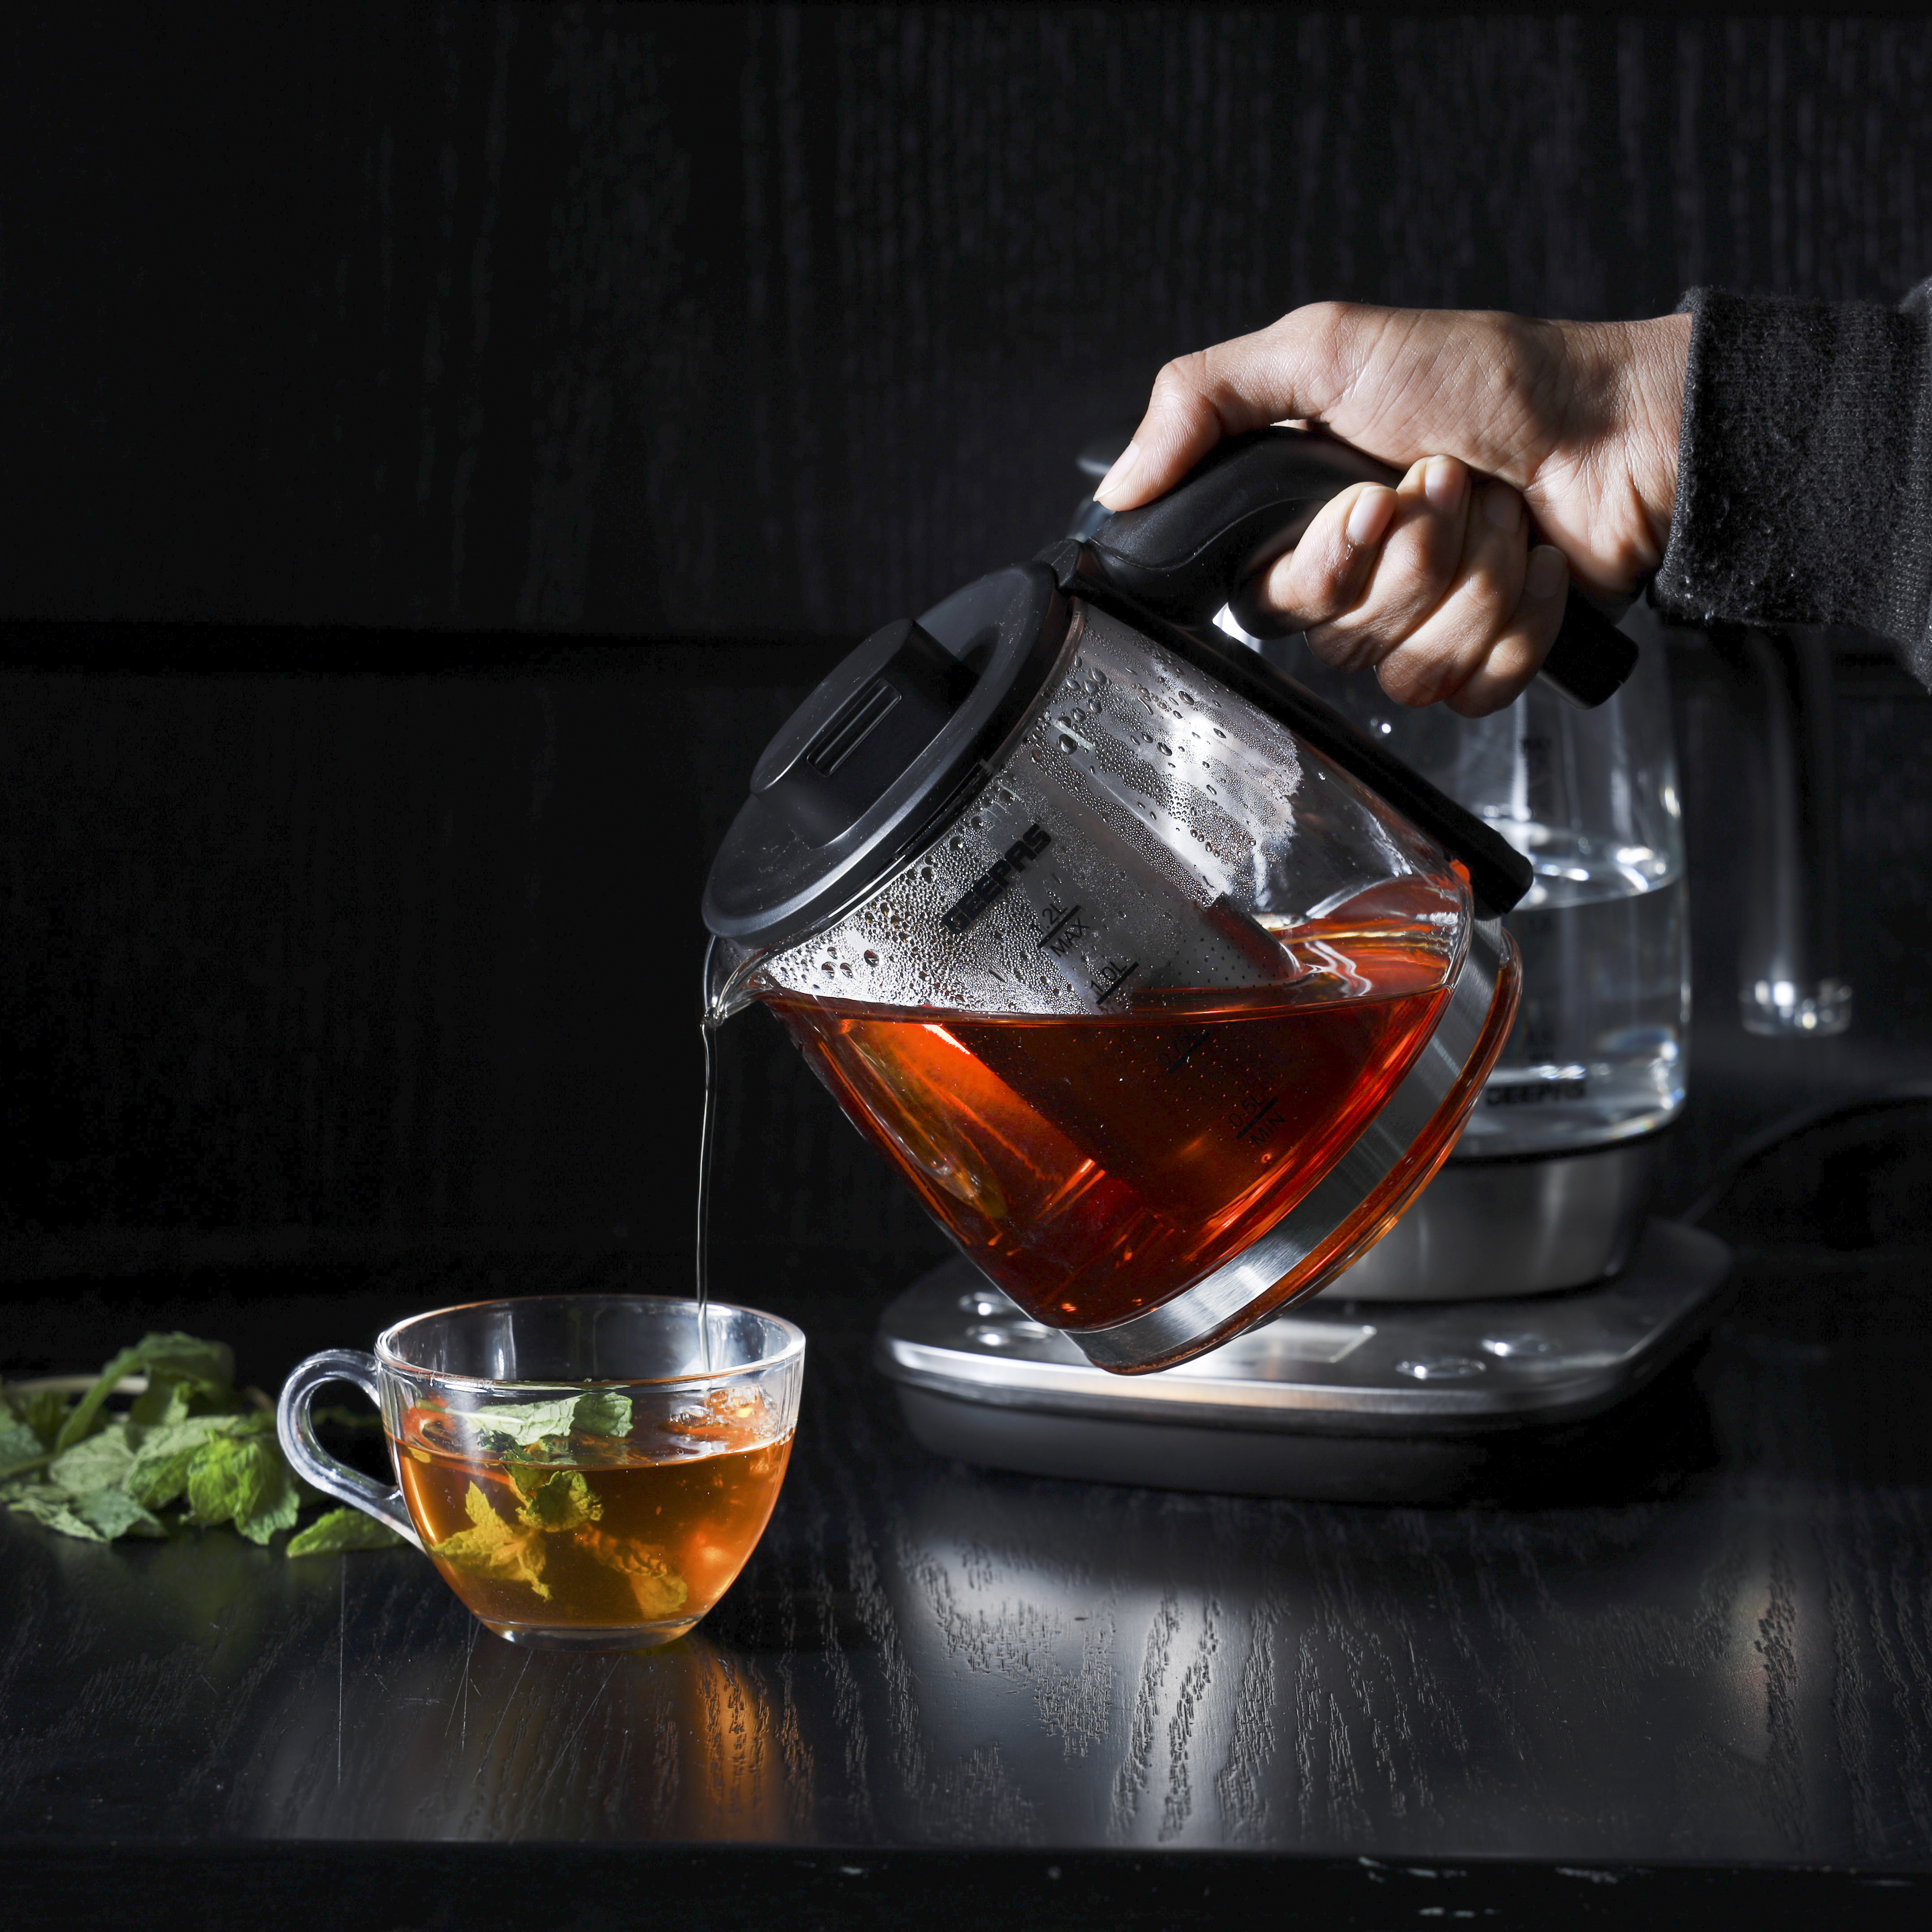 Buy Geepas 2 In 1 Digital Tea Maker - Stainless Steel Filter GTM38045 online